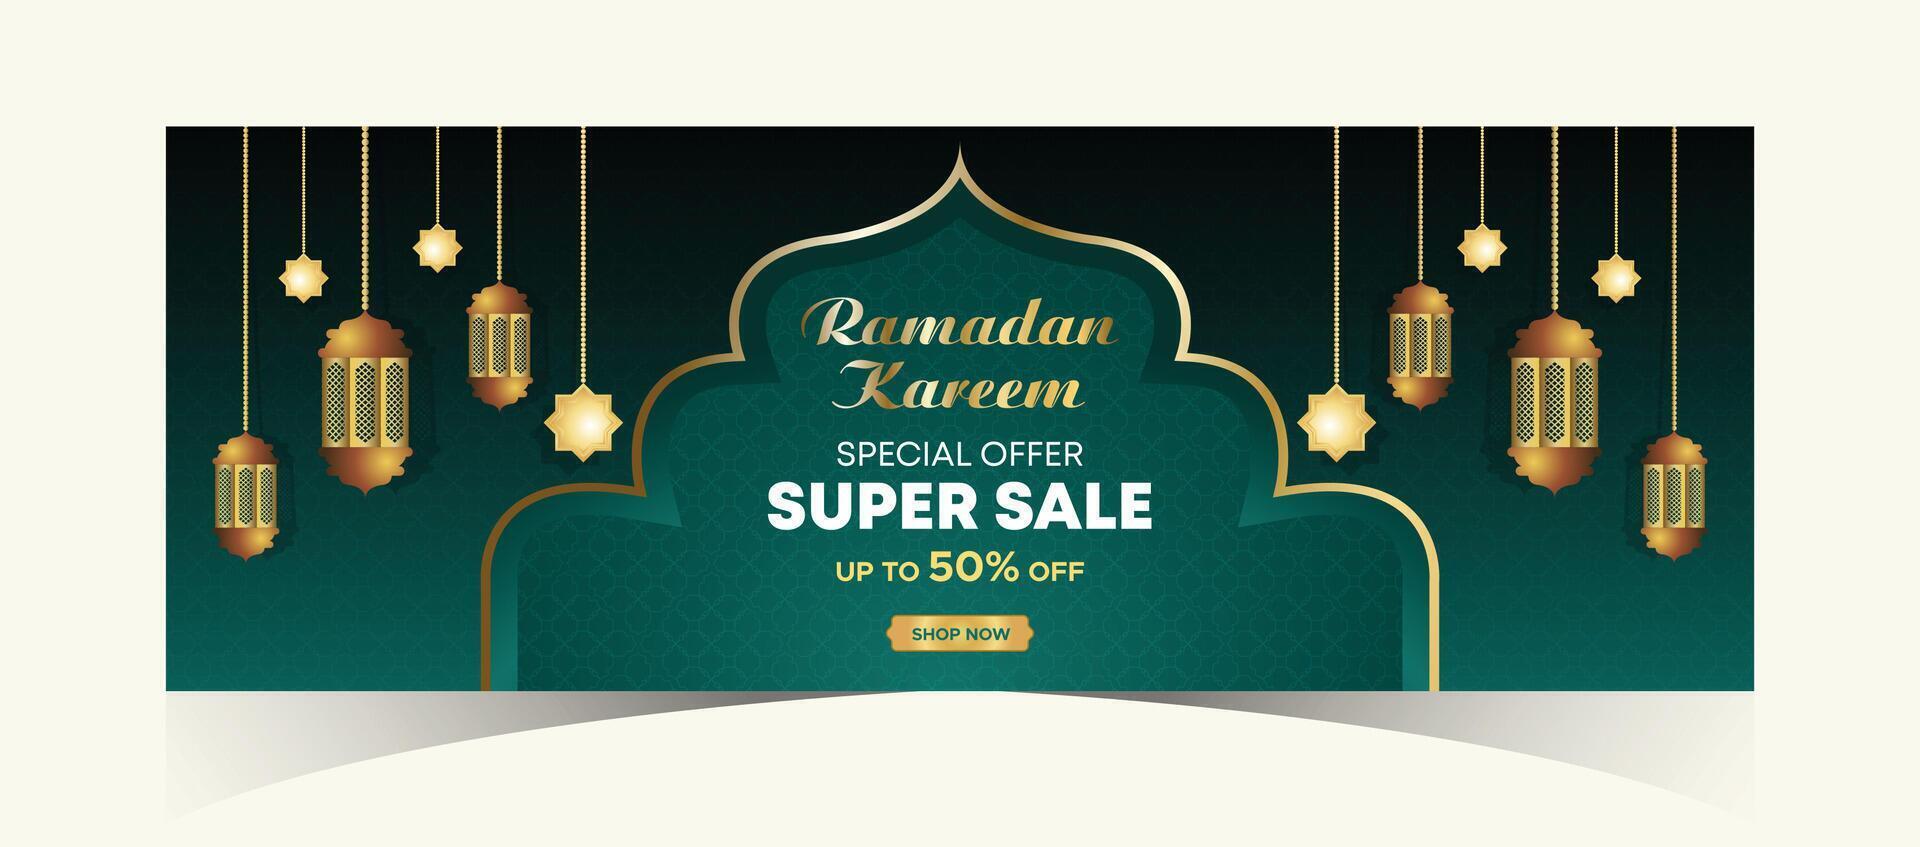 Ramadan kareem web achtergrond super uitverkoop banier met podium voor Scherm van Product. Ramadan mega groot uitverkoop Promotie poster en sociaal media na. Islamitisch speciaal aanbod Promotie banier ontwerp sjabloon vector